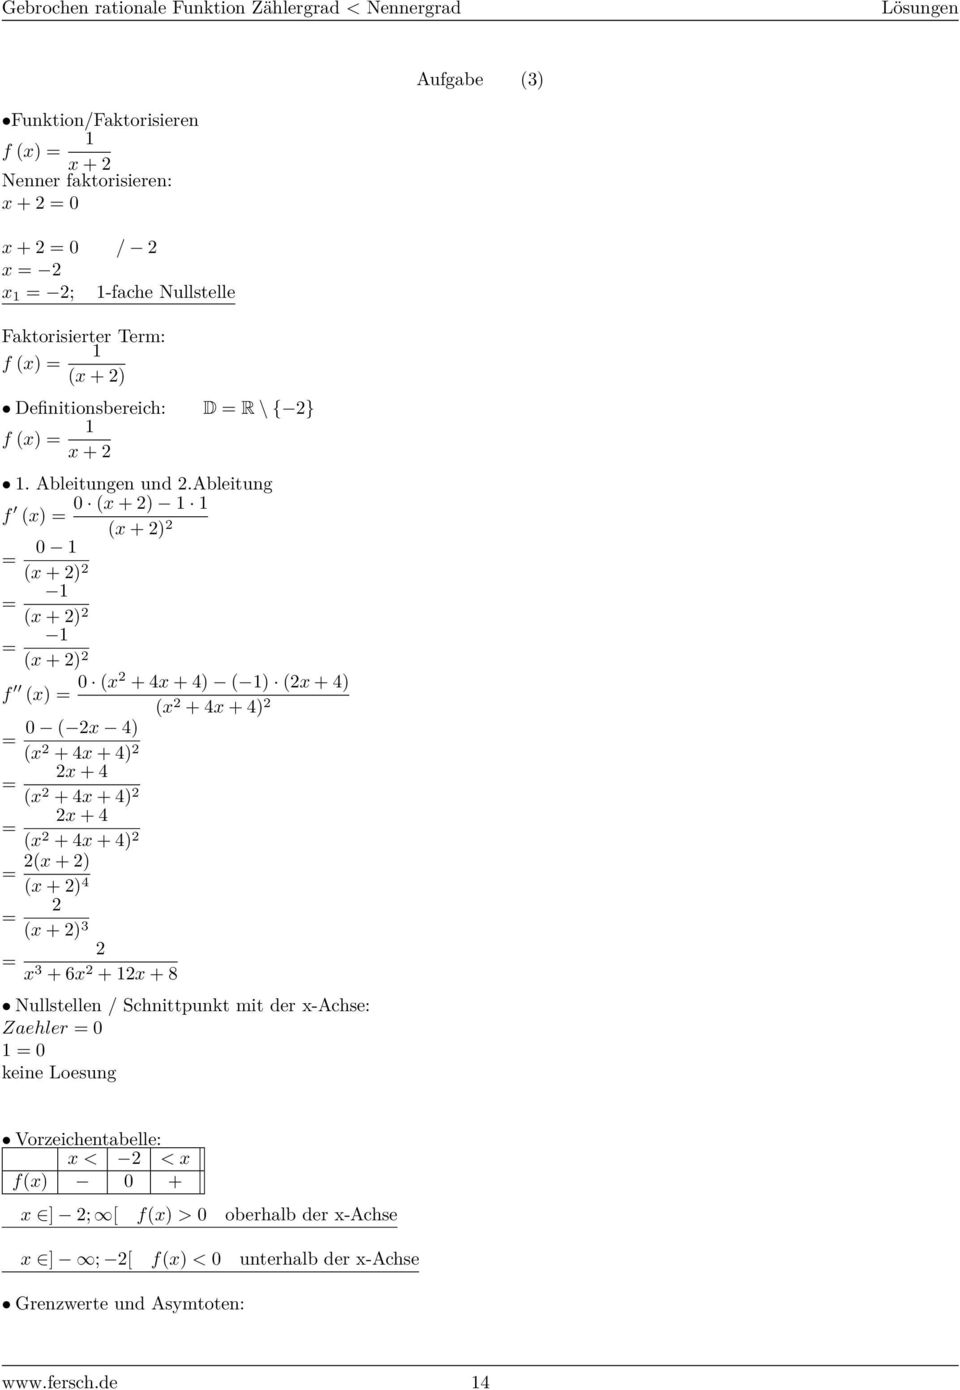 ableitung f 0 (x + ) (x) = (x + ) = 0 (x + ) = (x + ) = (x + ) f (x) = 0 (x + x + ) ( ) (x + ) (x + x + ) 0 ( x ) = (x + x + ) x + = (x + x + ) x + = (x + x + ) (x + ) =